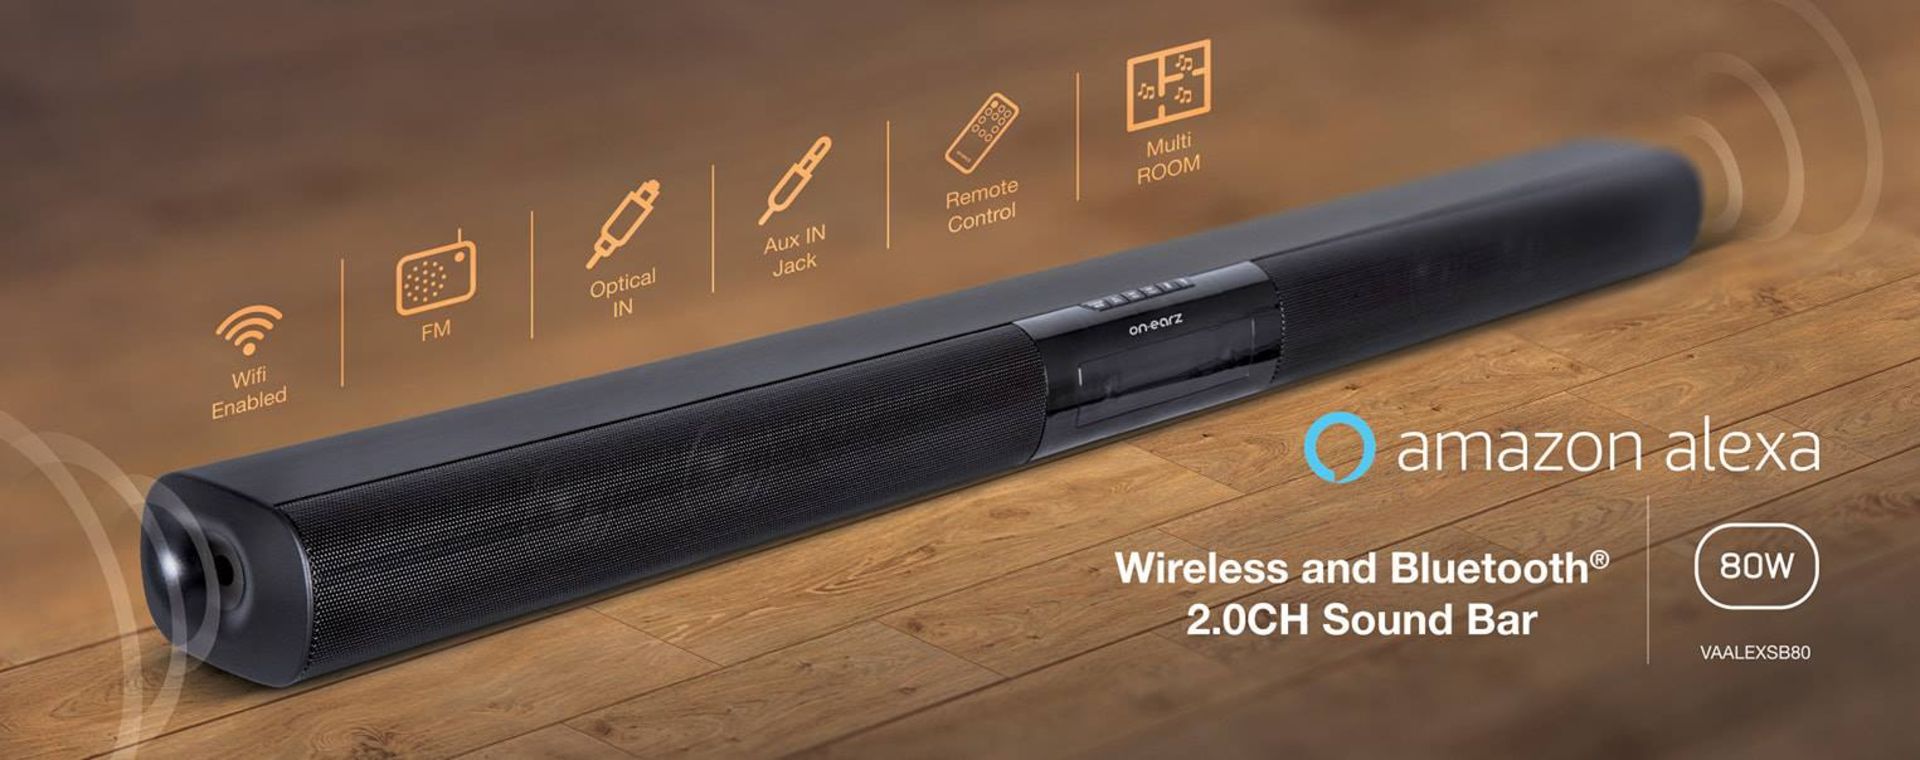 V Brand New On-Earz Alexa Enabled 80w Soundbar - 80w RMS Wi-Fi TV Bar With Alexa Amazon Voice